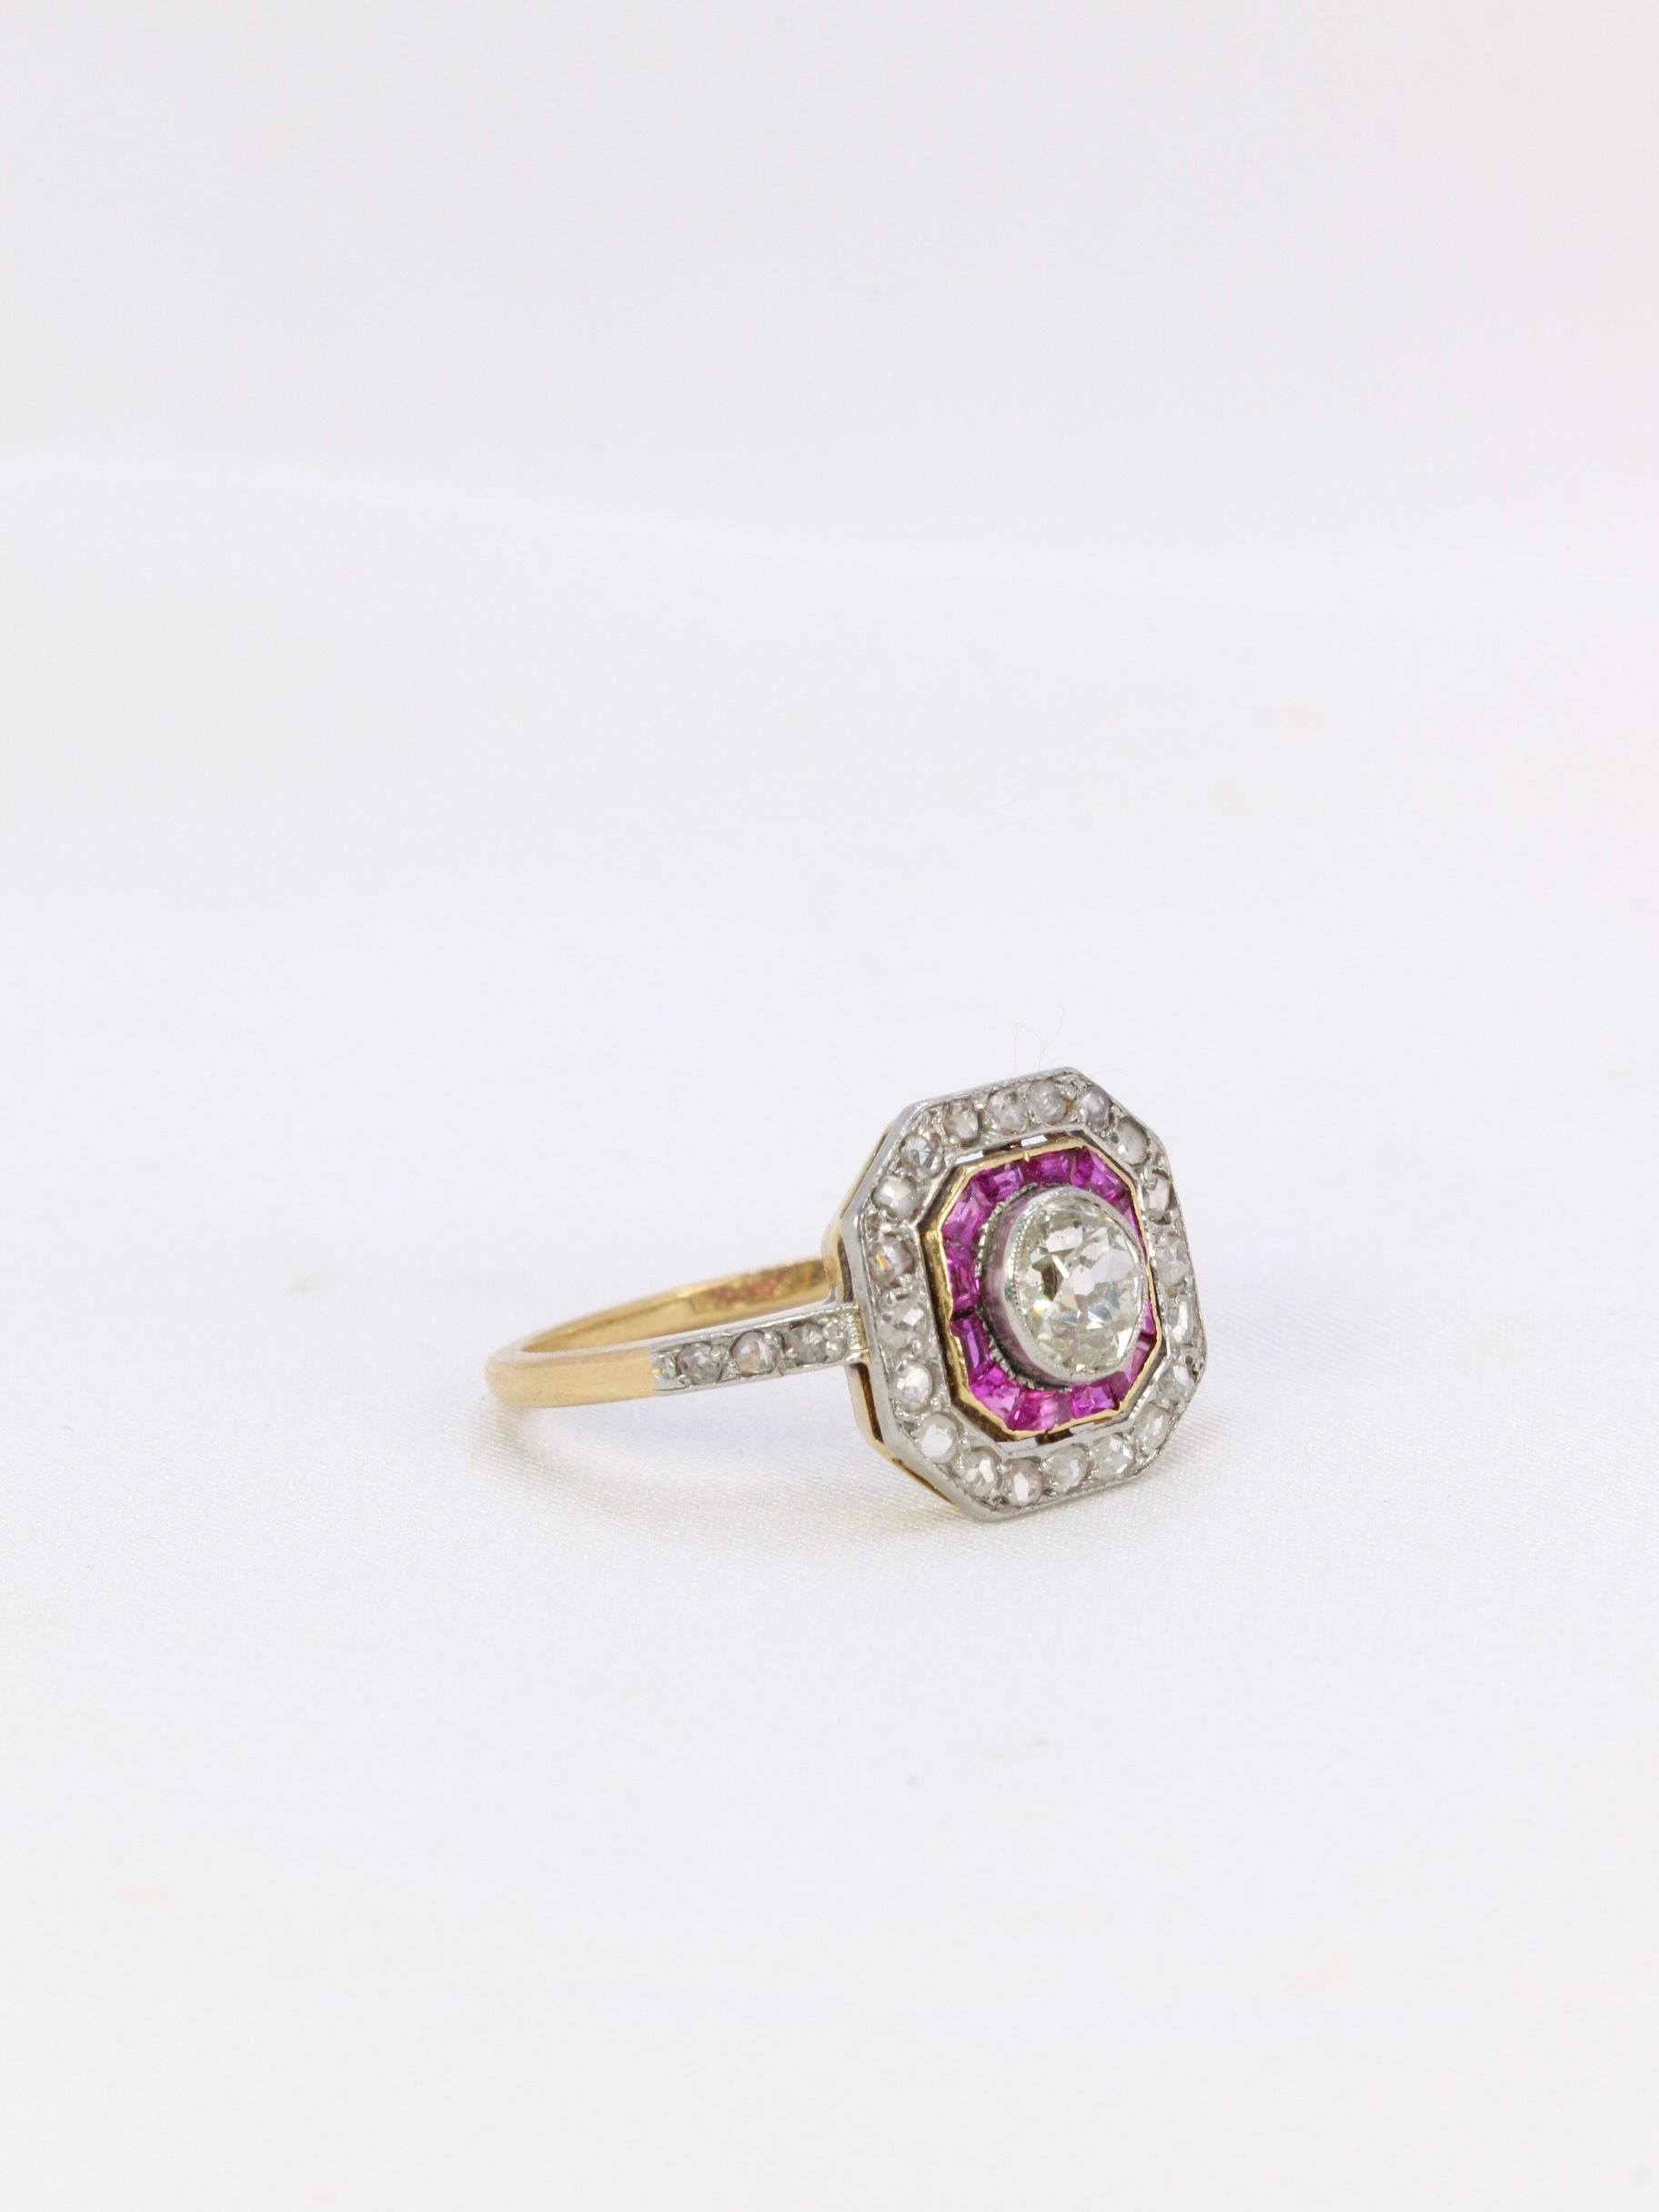 Bague Art-Déco en or 18Kt (750°/°°) sertie en son centre d'un diamant ovale de taille ancienne en serti clos pesant environ 0,7 carats entouré d'une rangée de rubis calibrés et d'une rangée de diamants taillés en rose.
Ouvrage français typique de la